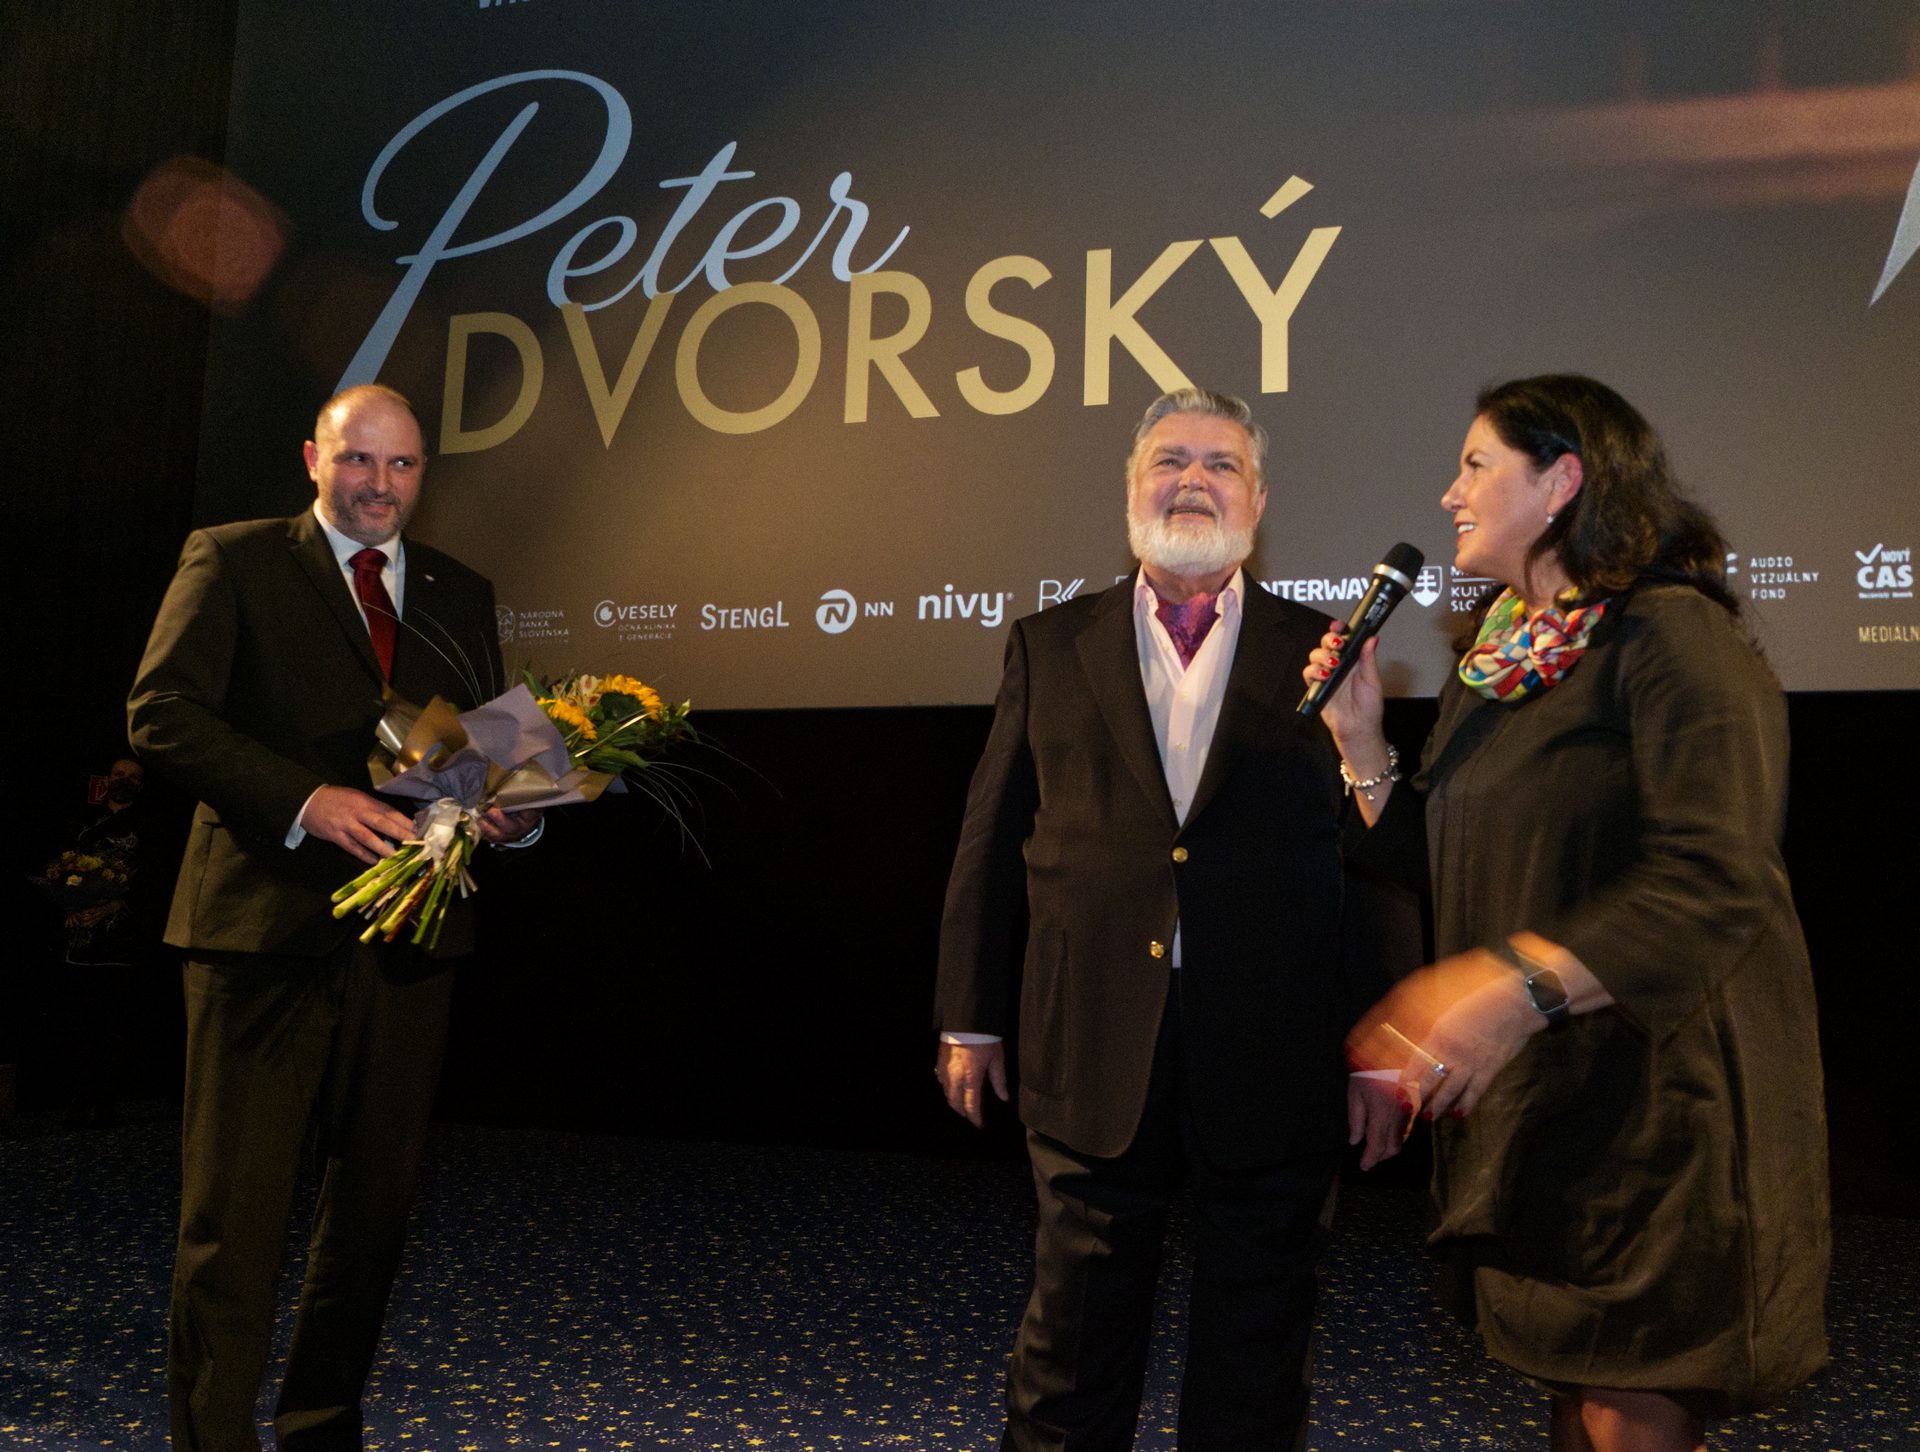 PeterDvorskyFilm9